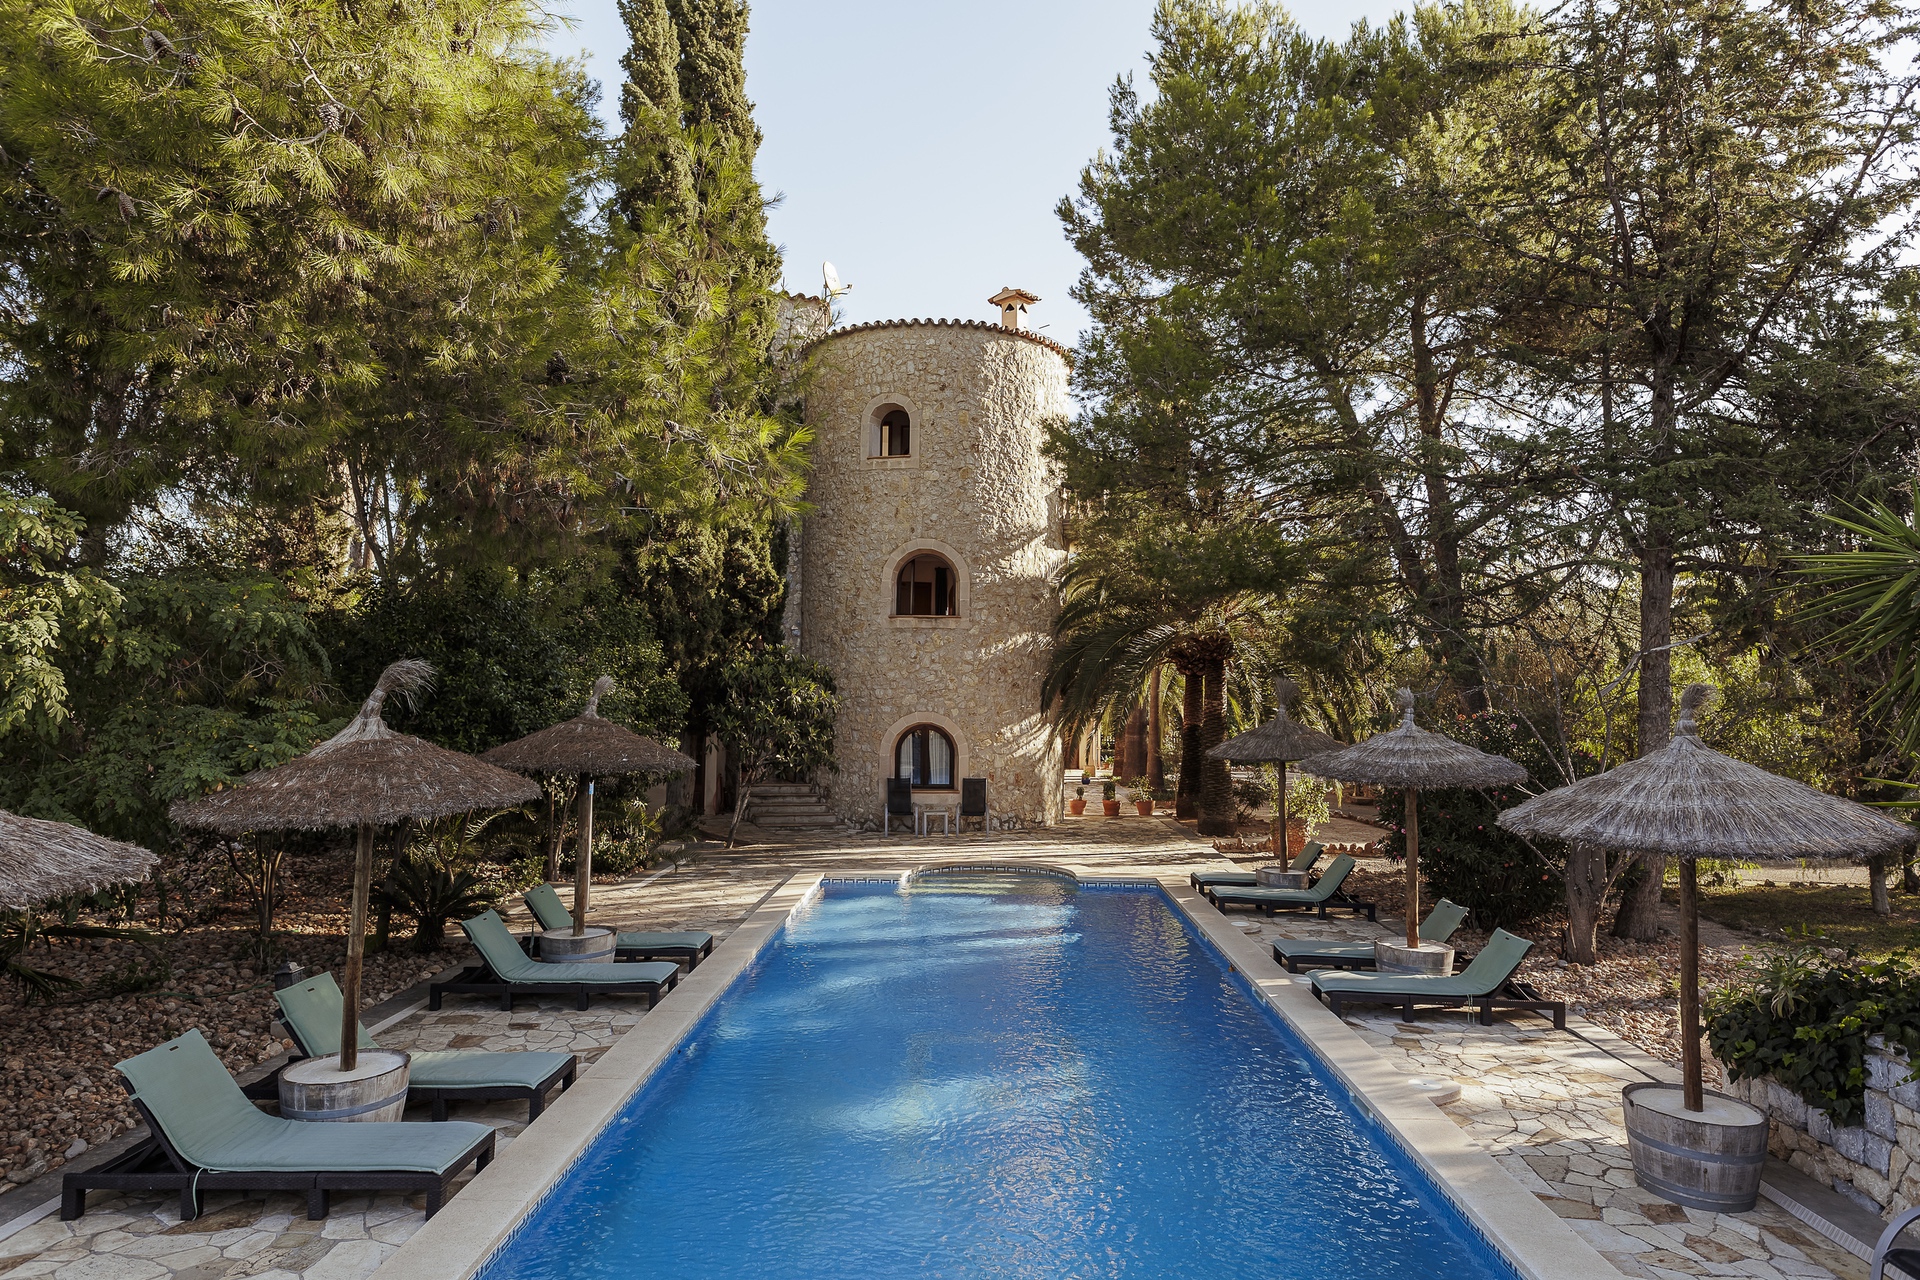 Genießen Sie die Natur: Can Davero Landhotel & Weingut auf Mallorca